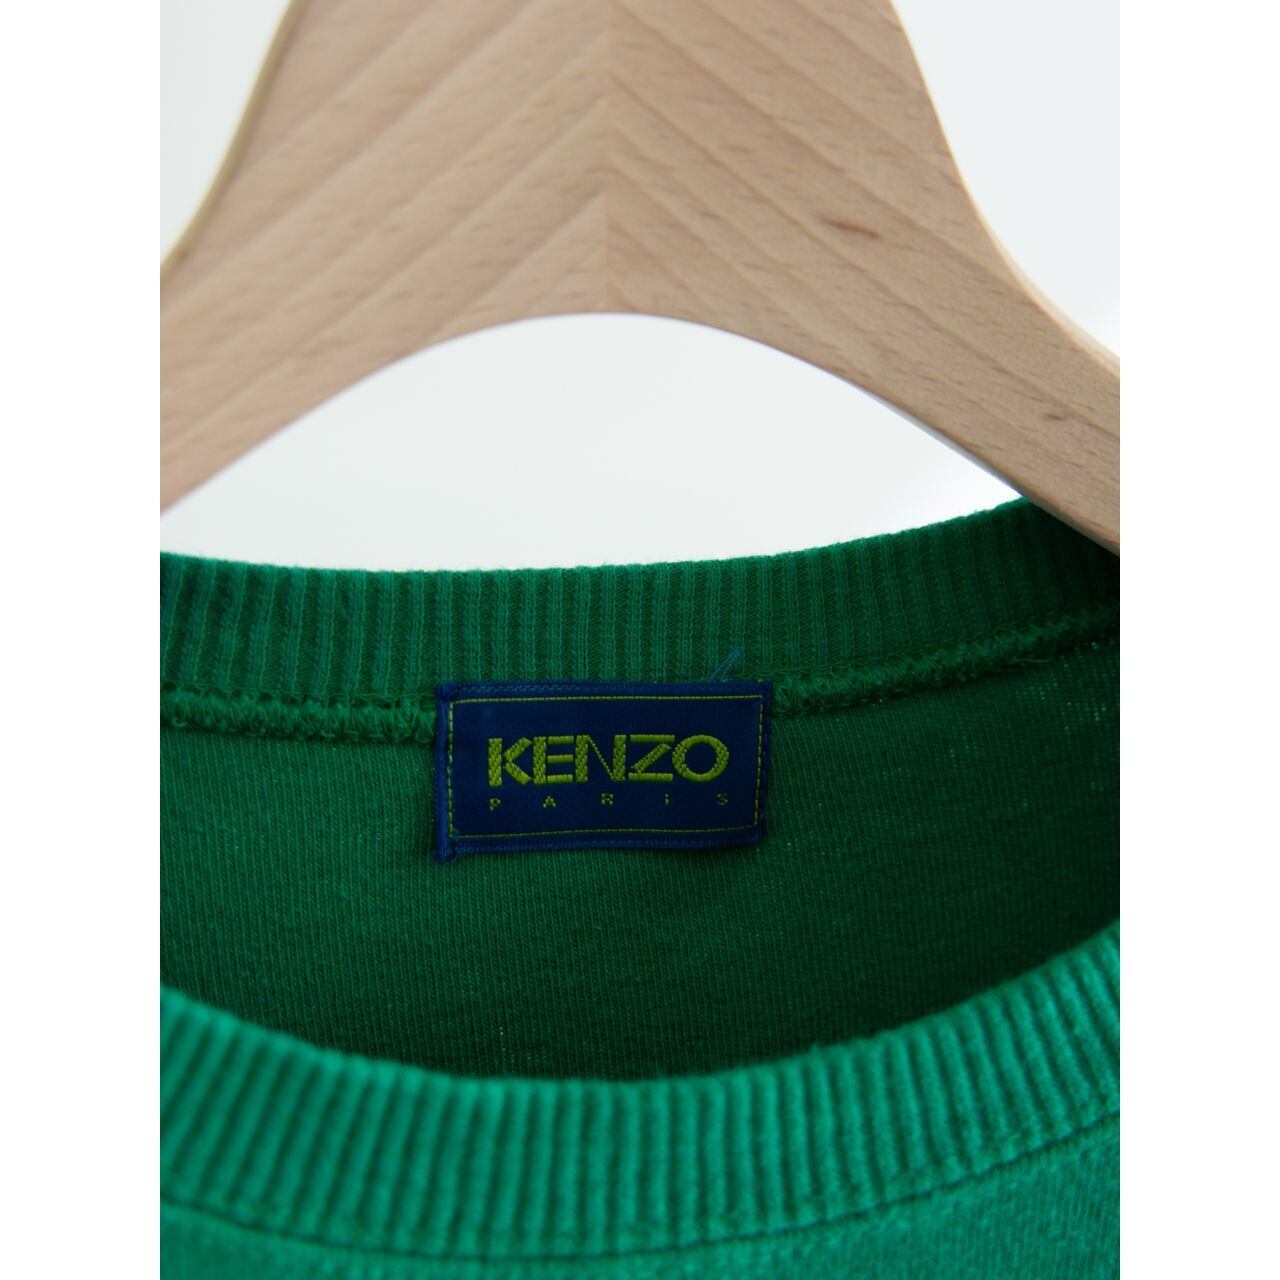 KENZO PARIS】Made in Japan 90's Sweat Shirt（ケンゾー 日本製